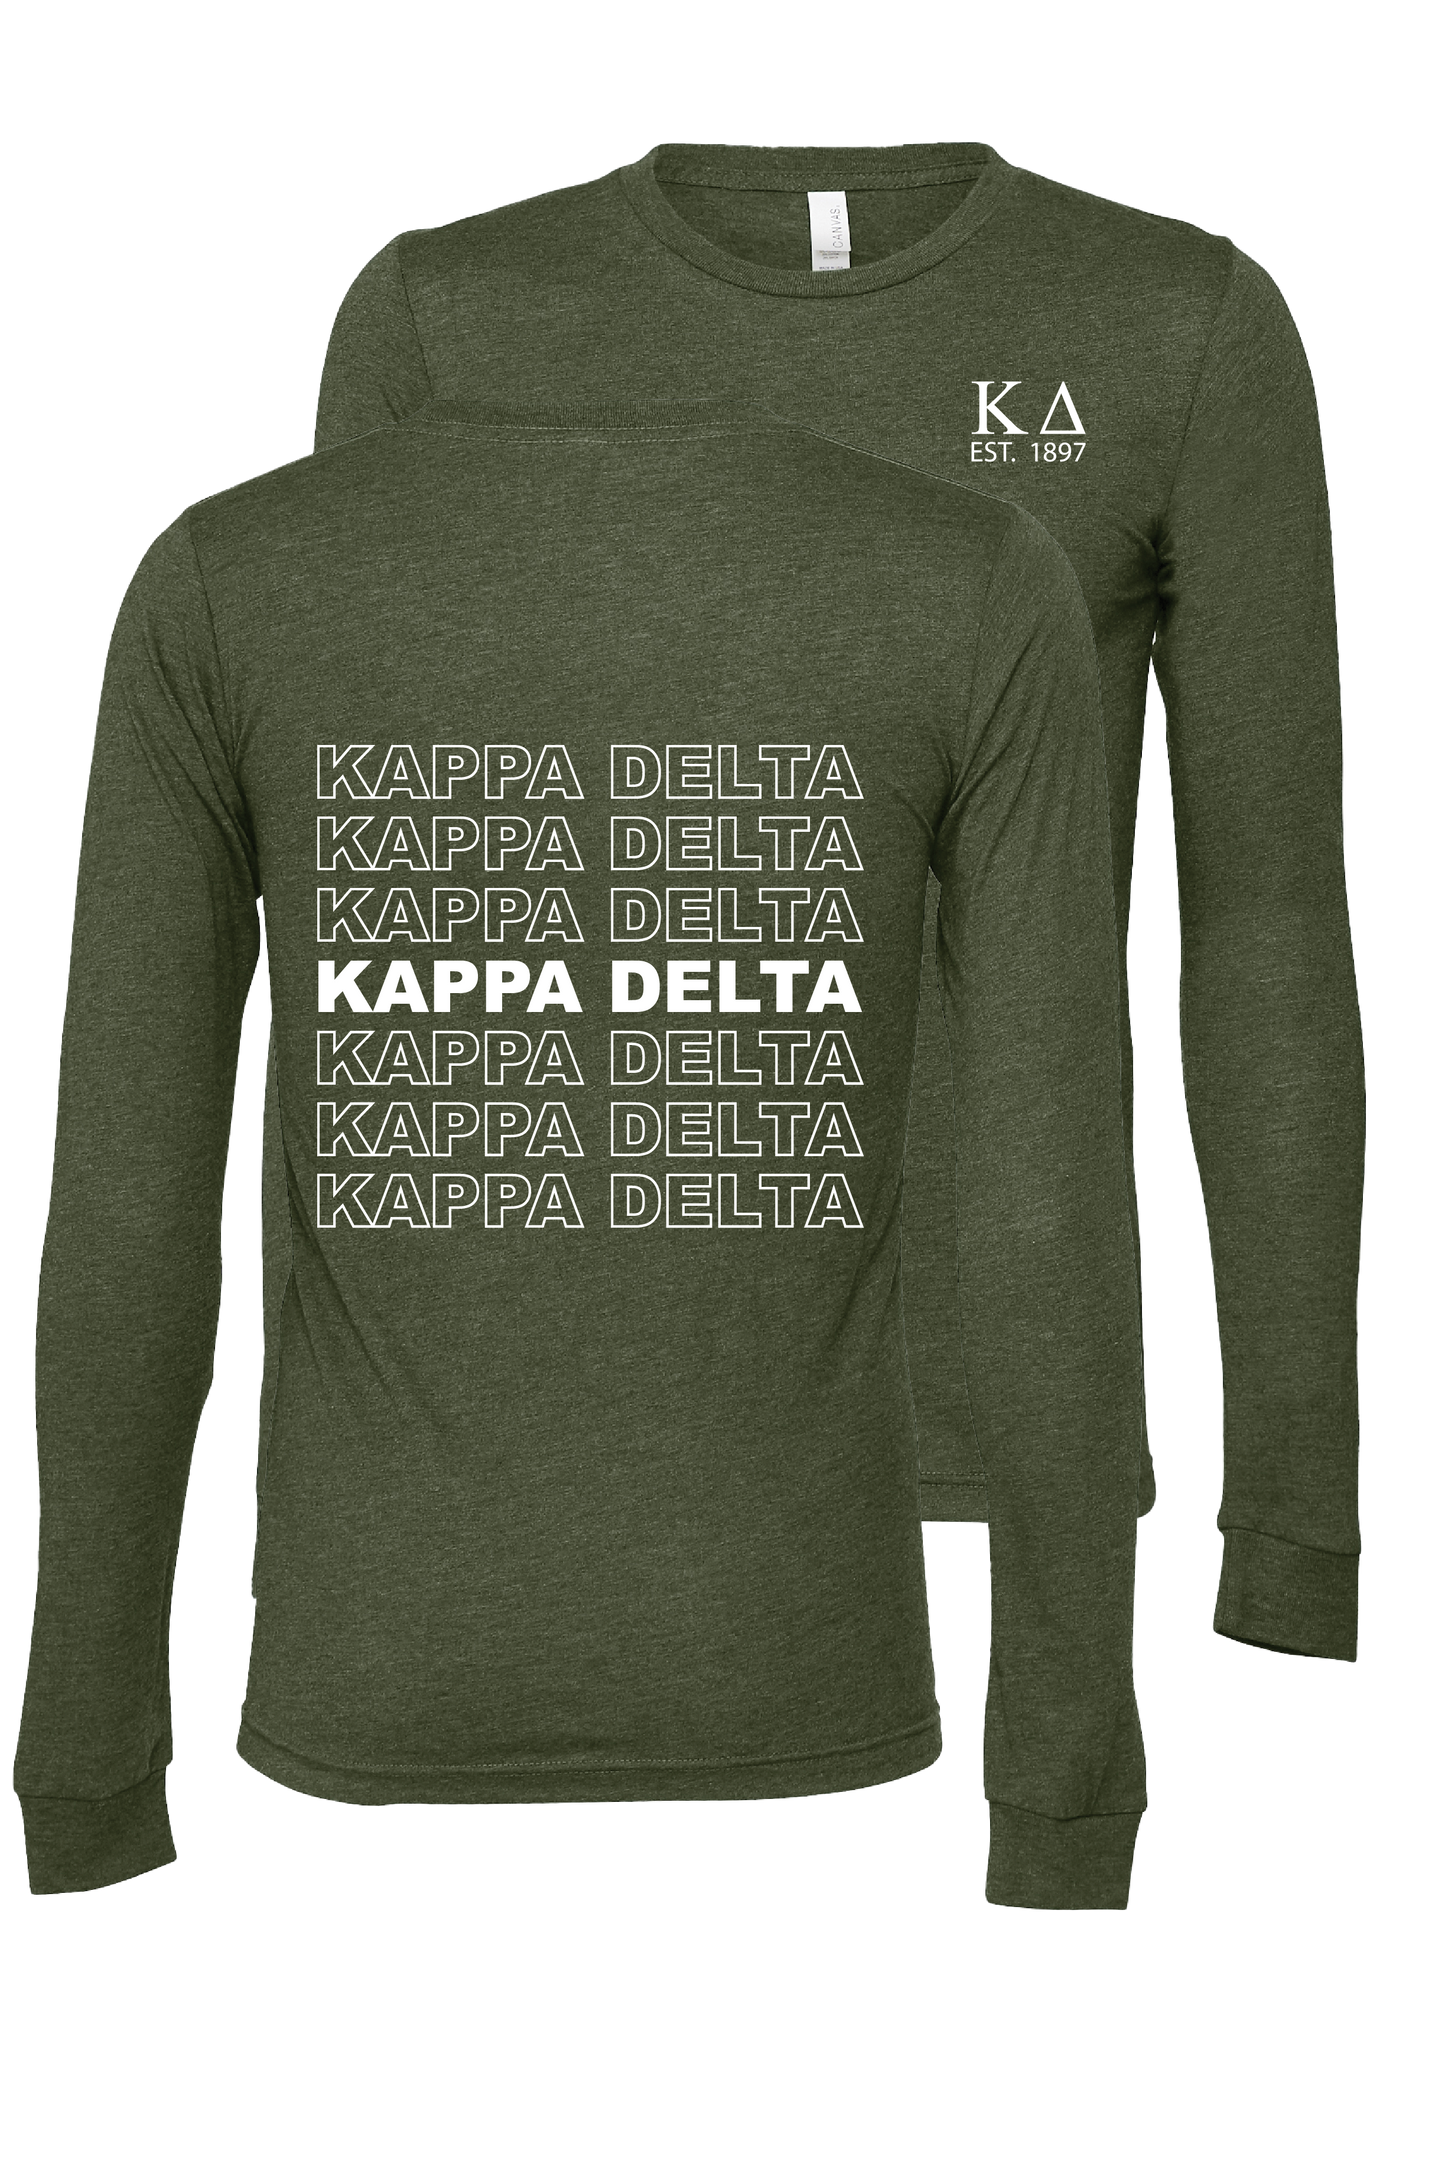 Kappa Delta Repeating Name Long Sleeve T-Shirts